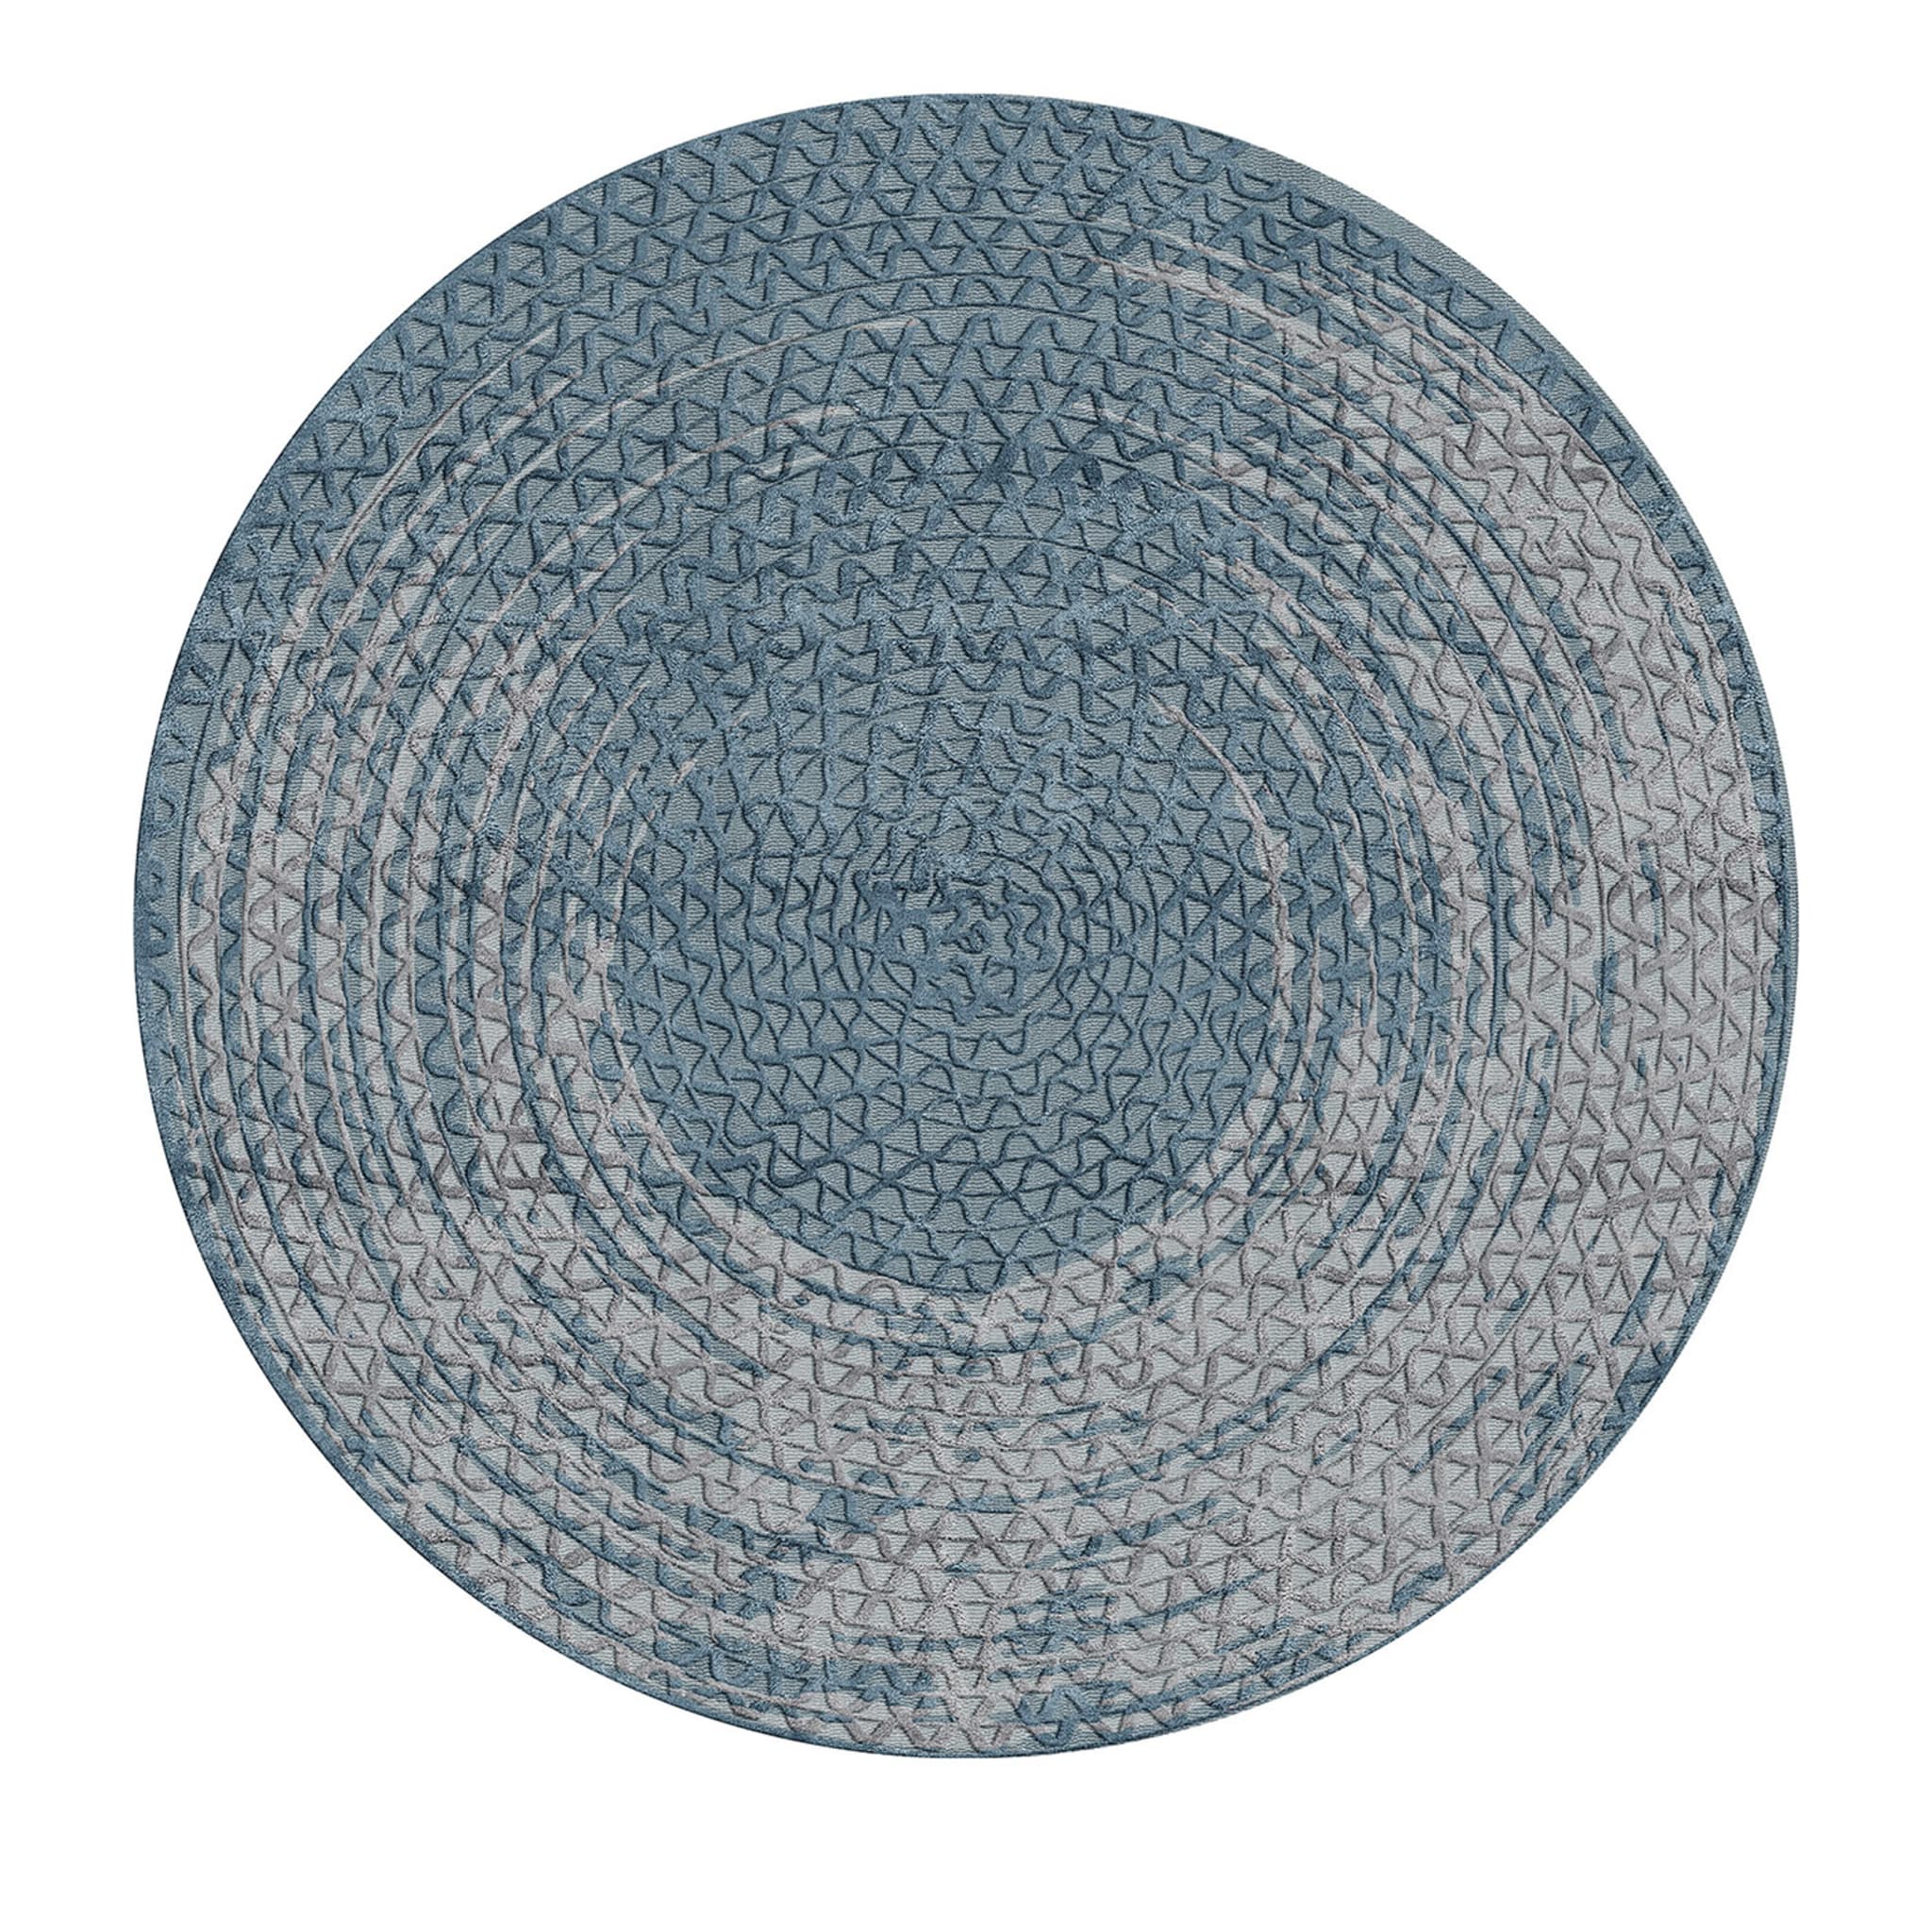 Runder blauer teppich Triple Waves von Lorenza Bozzoli  - Hauptansicht